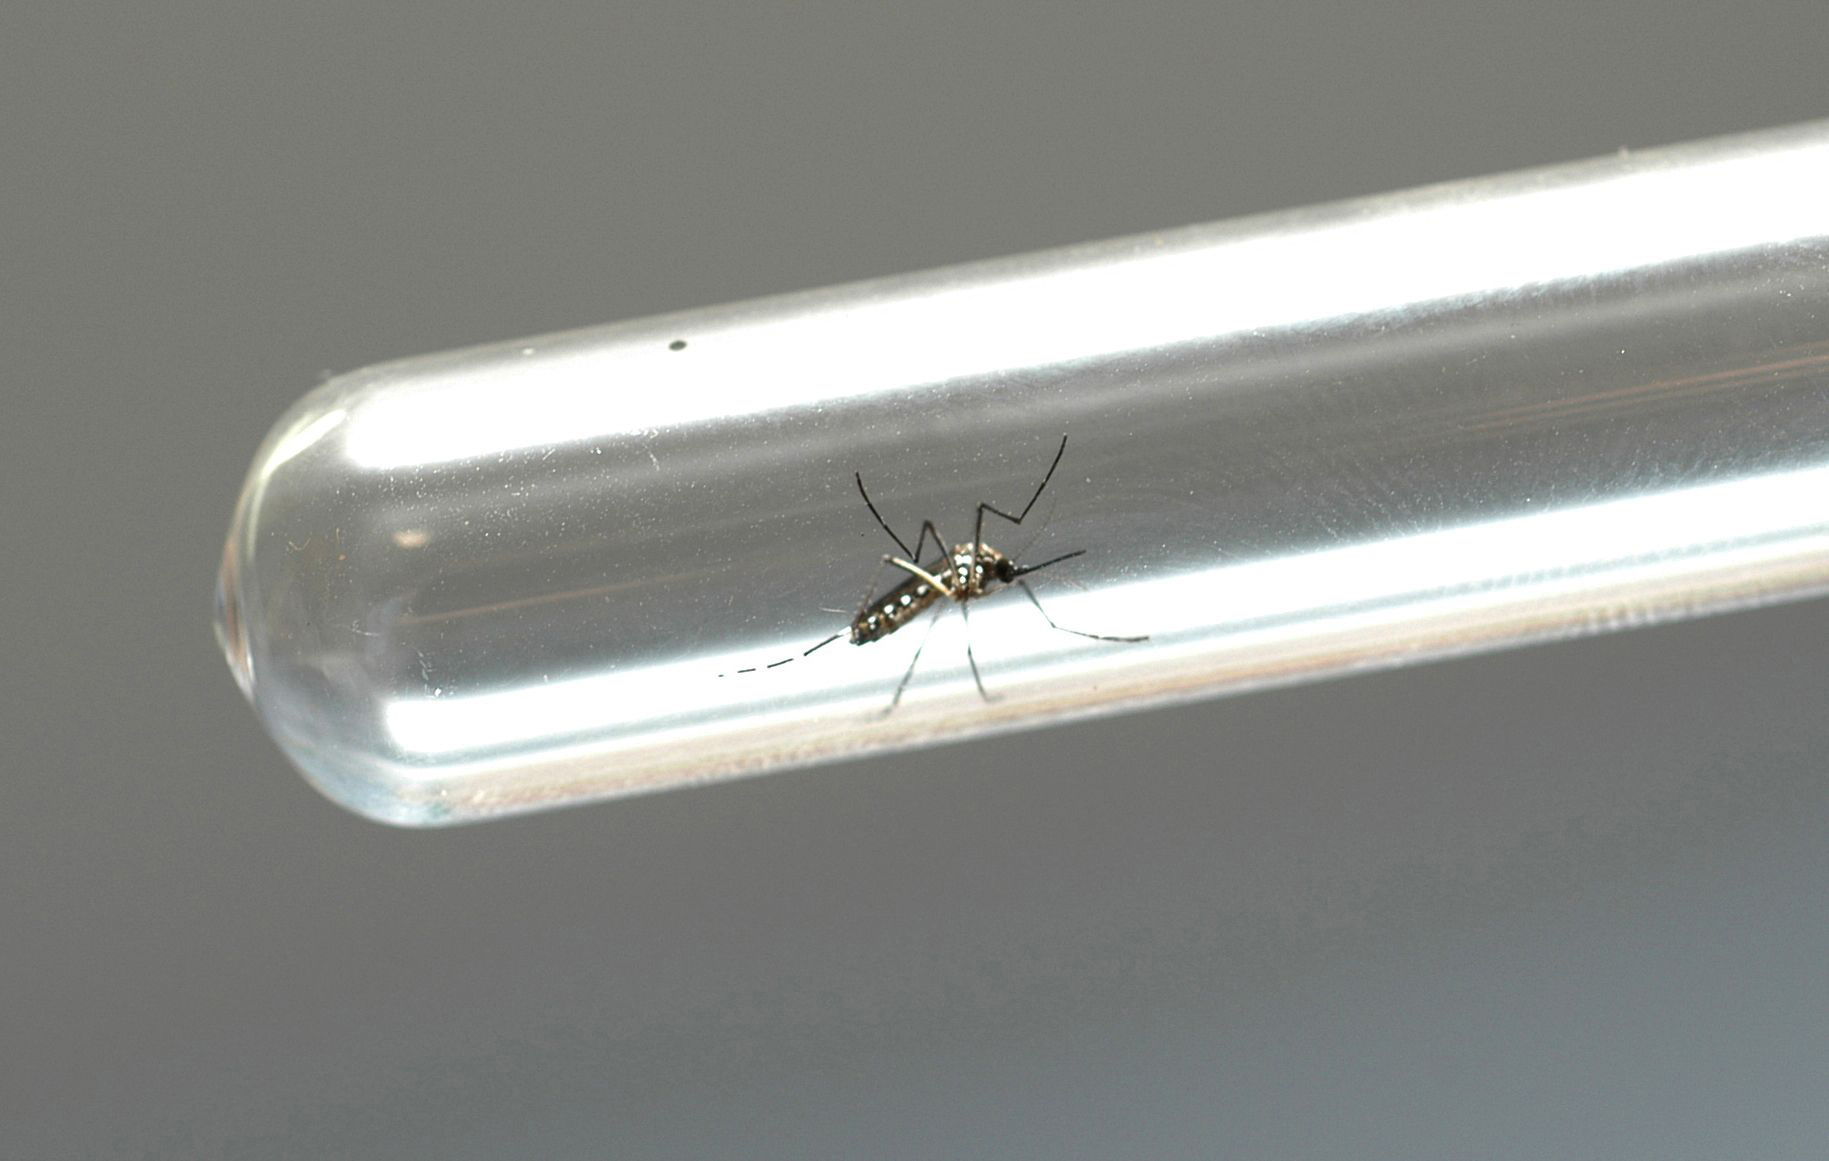 Nova geração de bioinseticida contra Aedes aegypti está em fase final de produção — Ministério da Agricultura e Pecuária